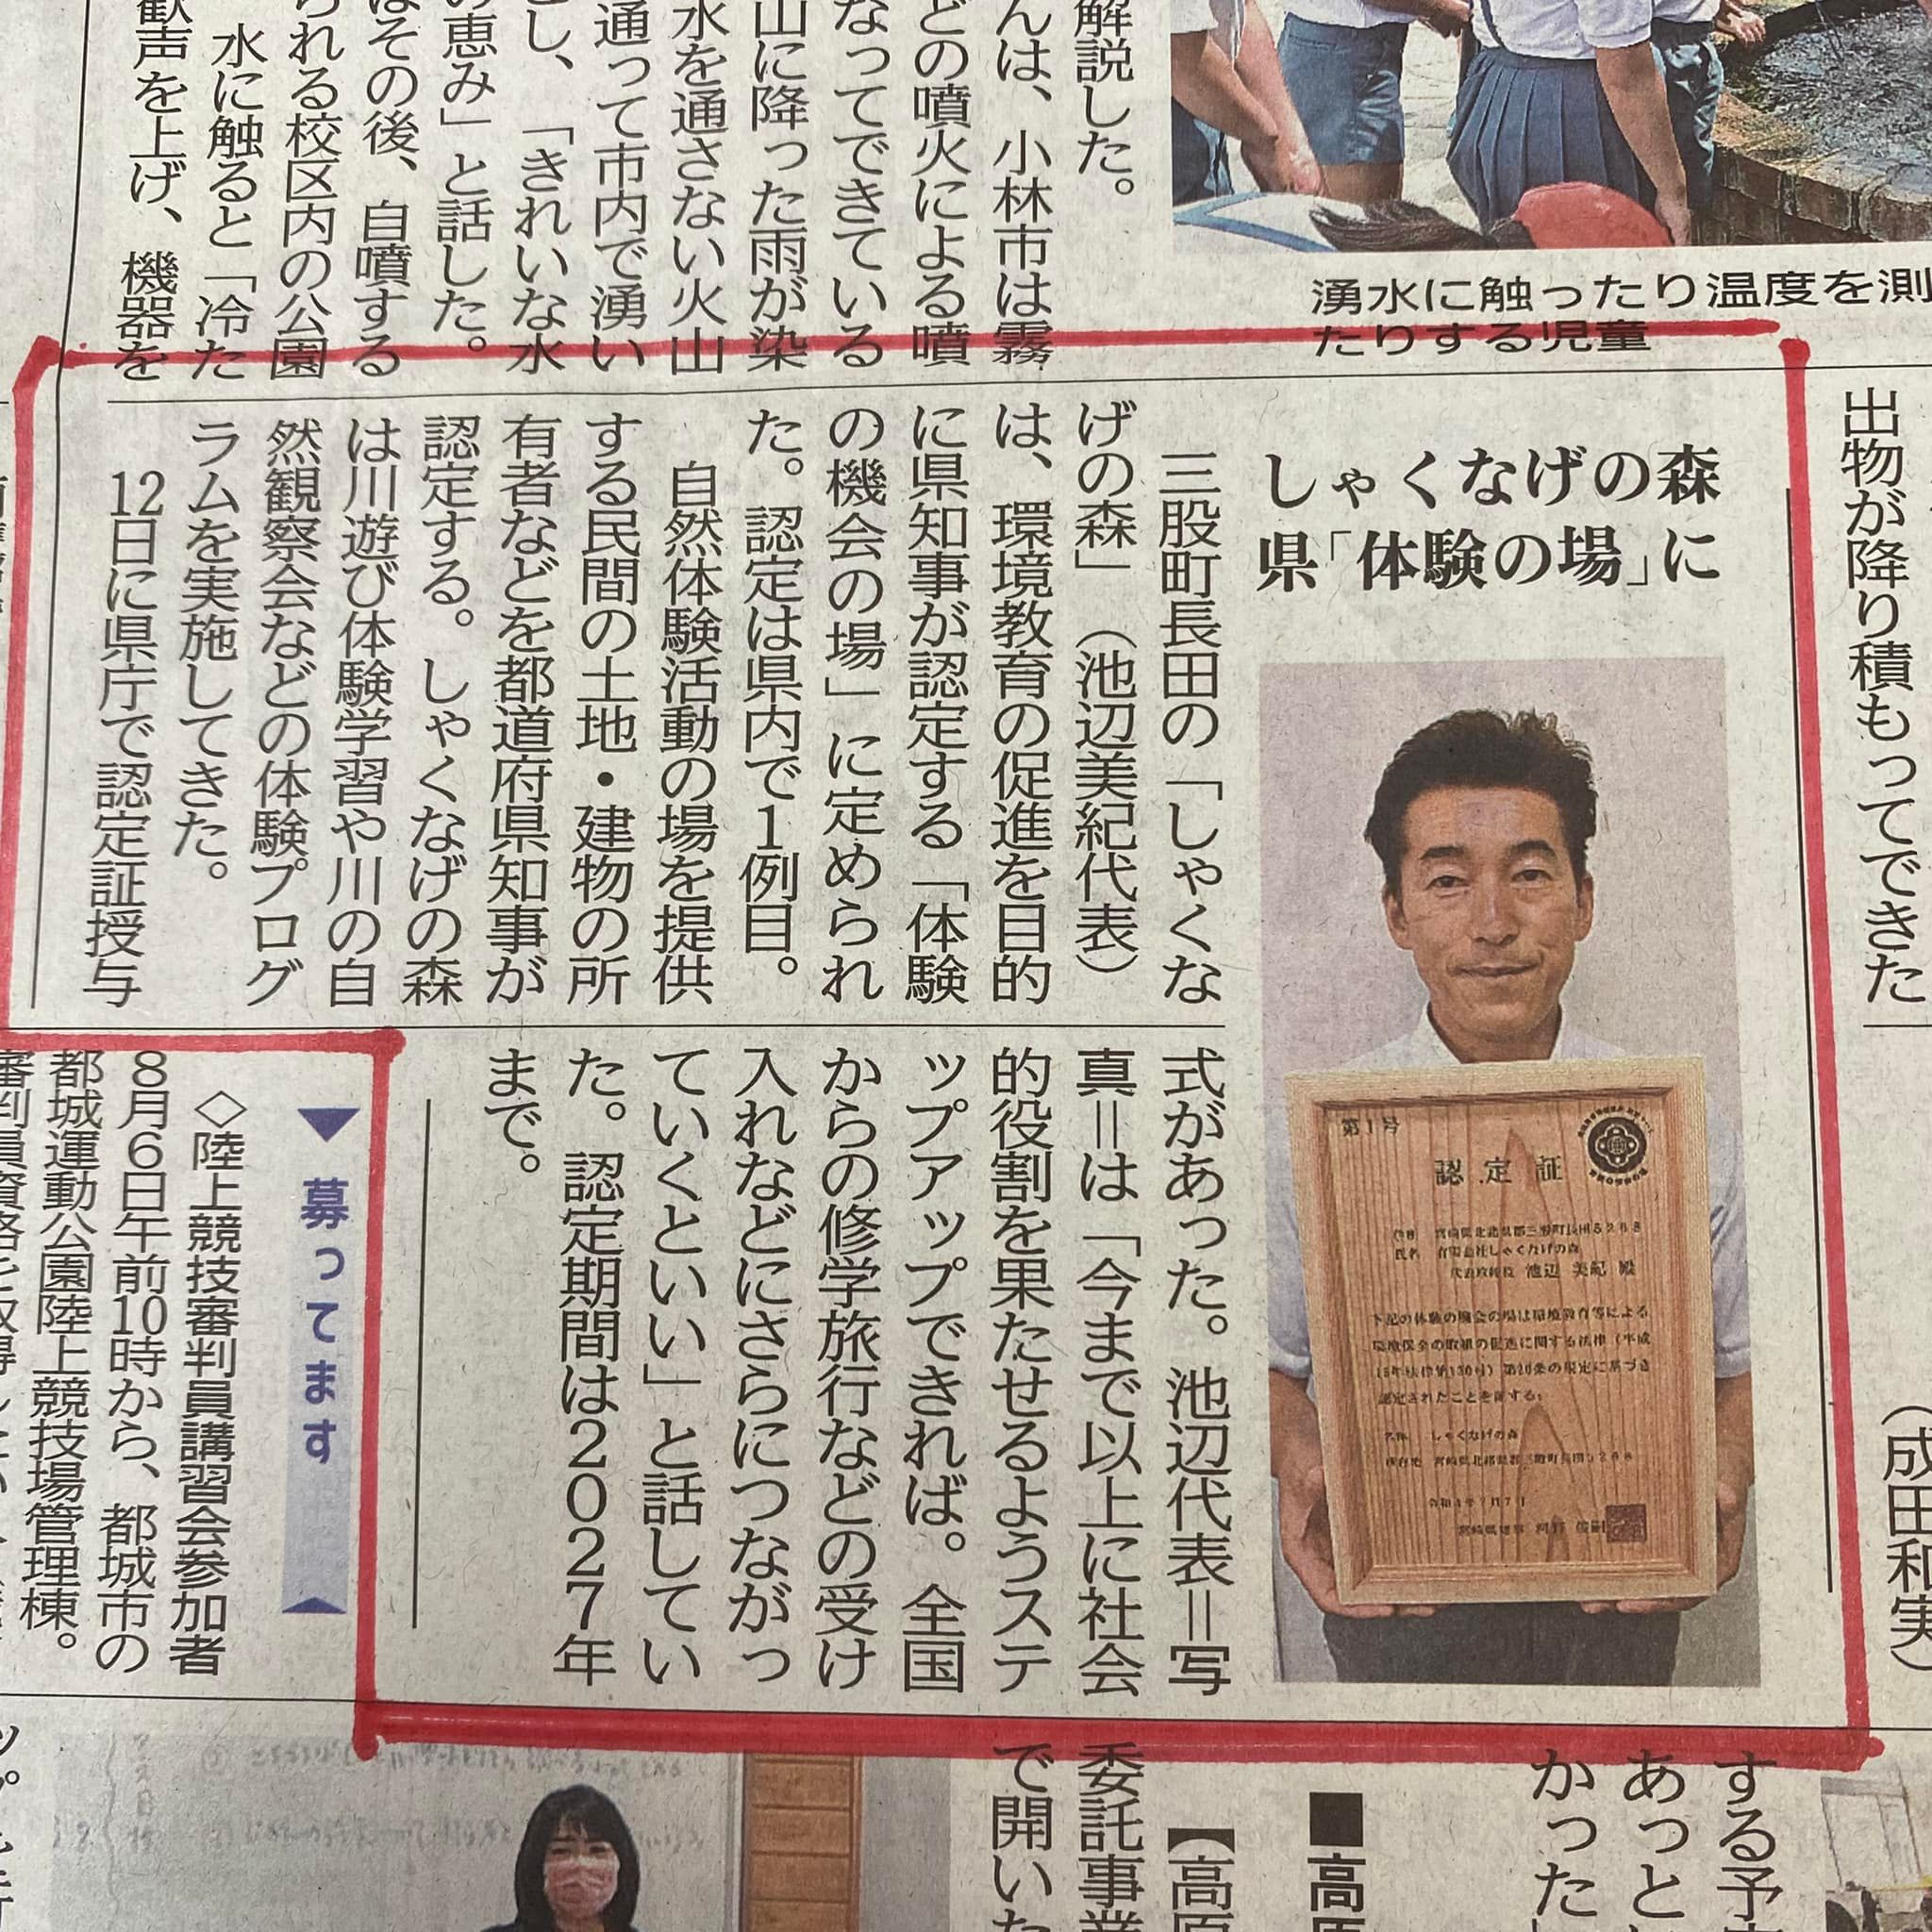 宮崎日日新聞に掲載されました